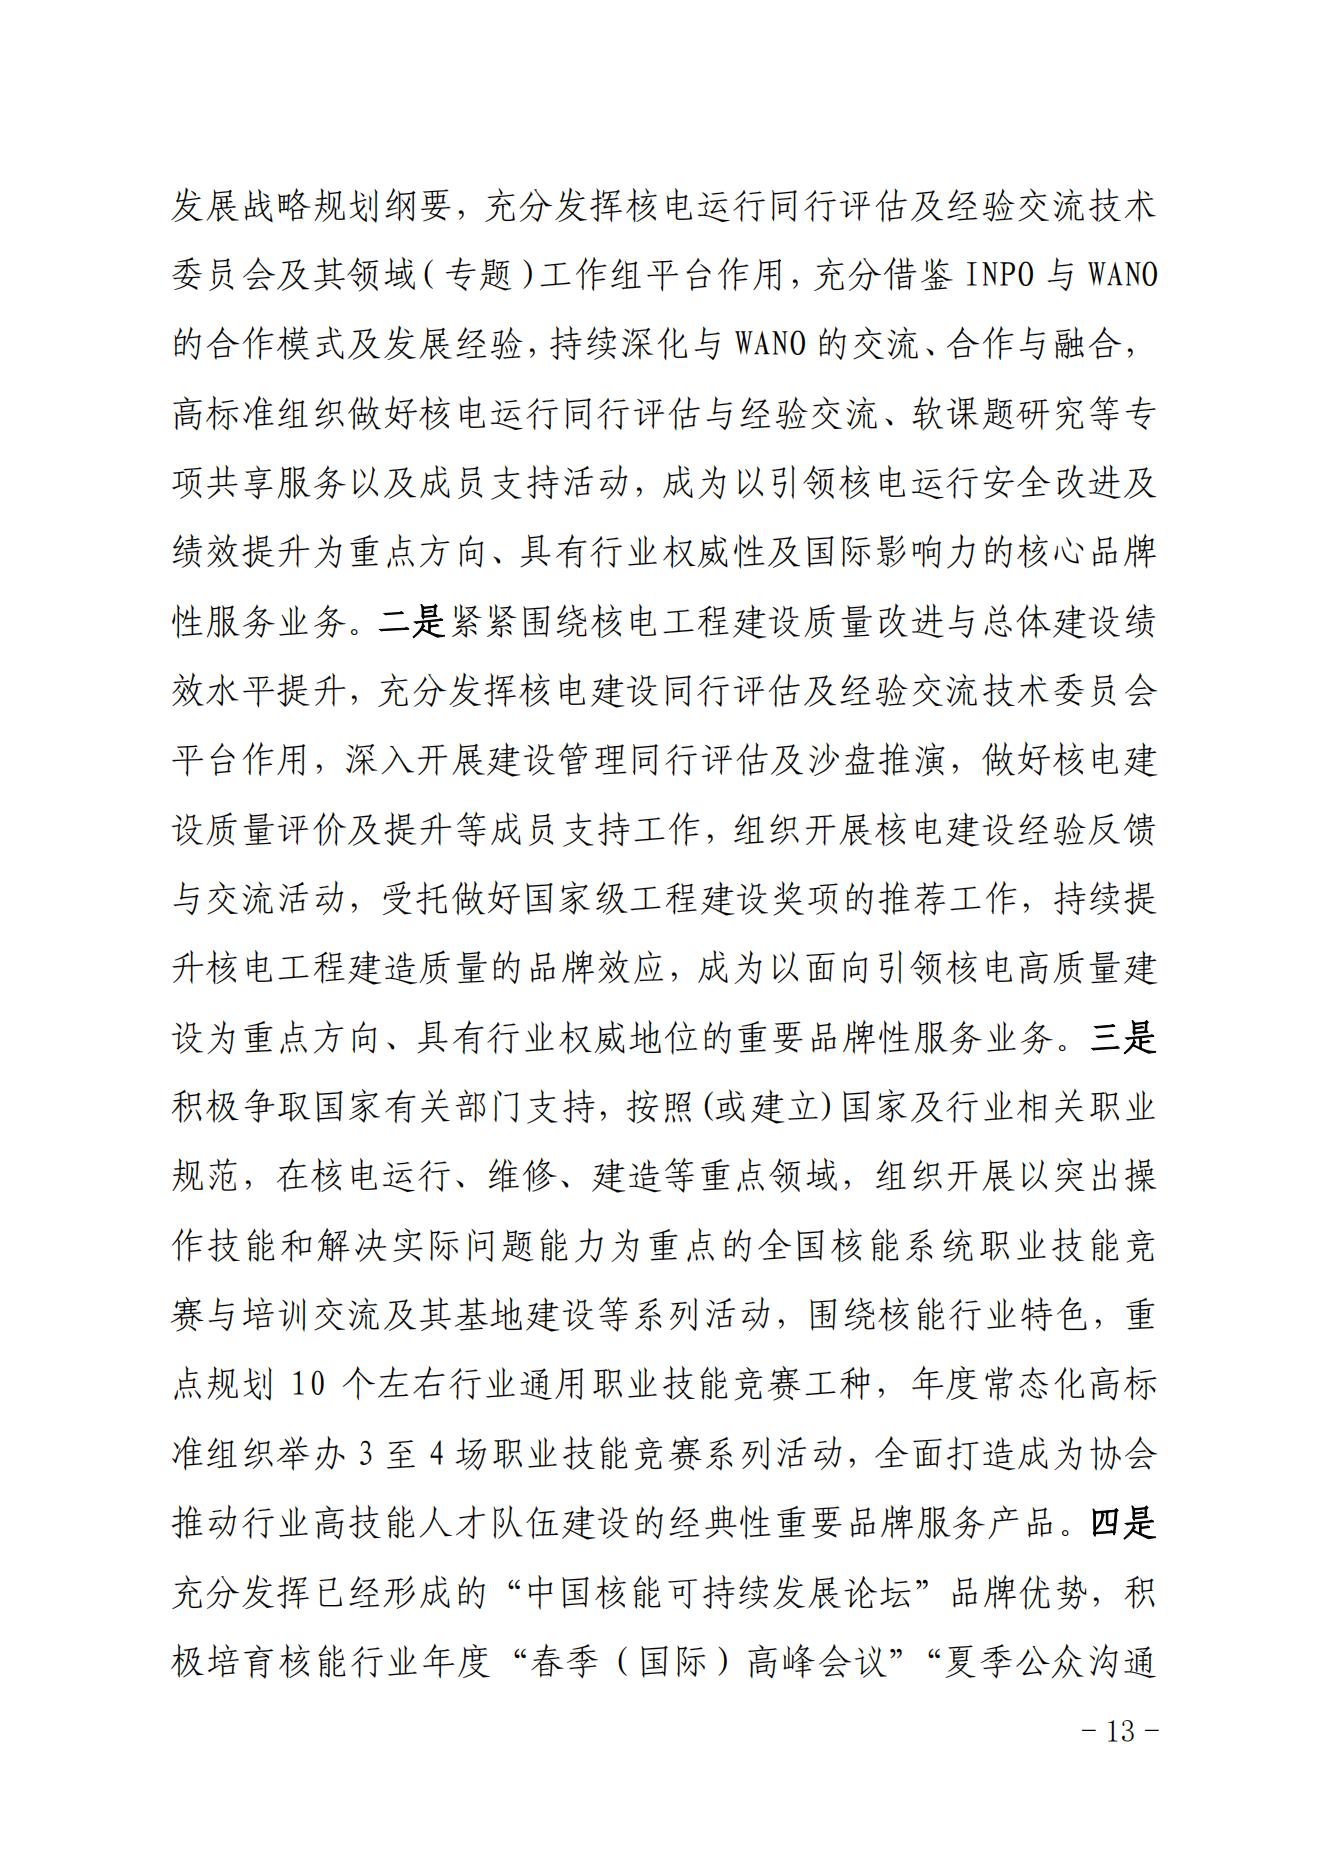 关于印发《中国核能行业协会“品牌协会成长计划”实施方案》的通知_12.jpg